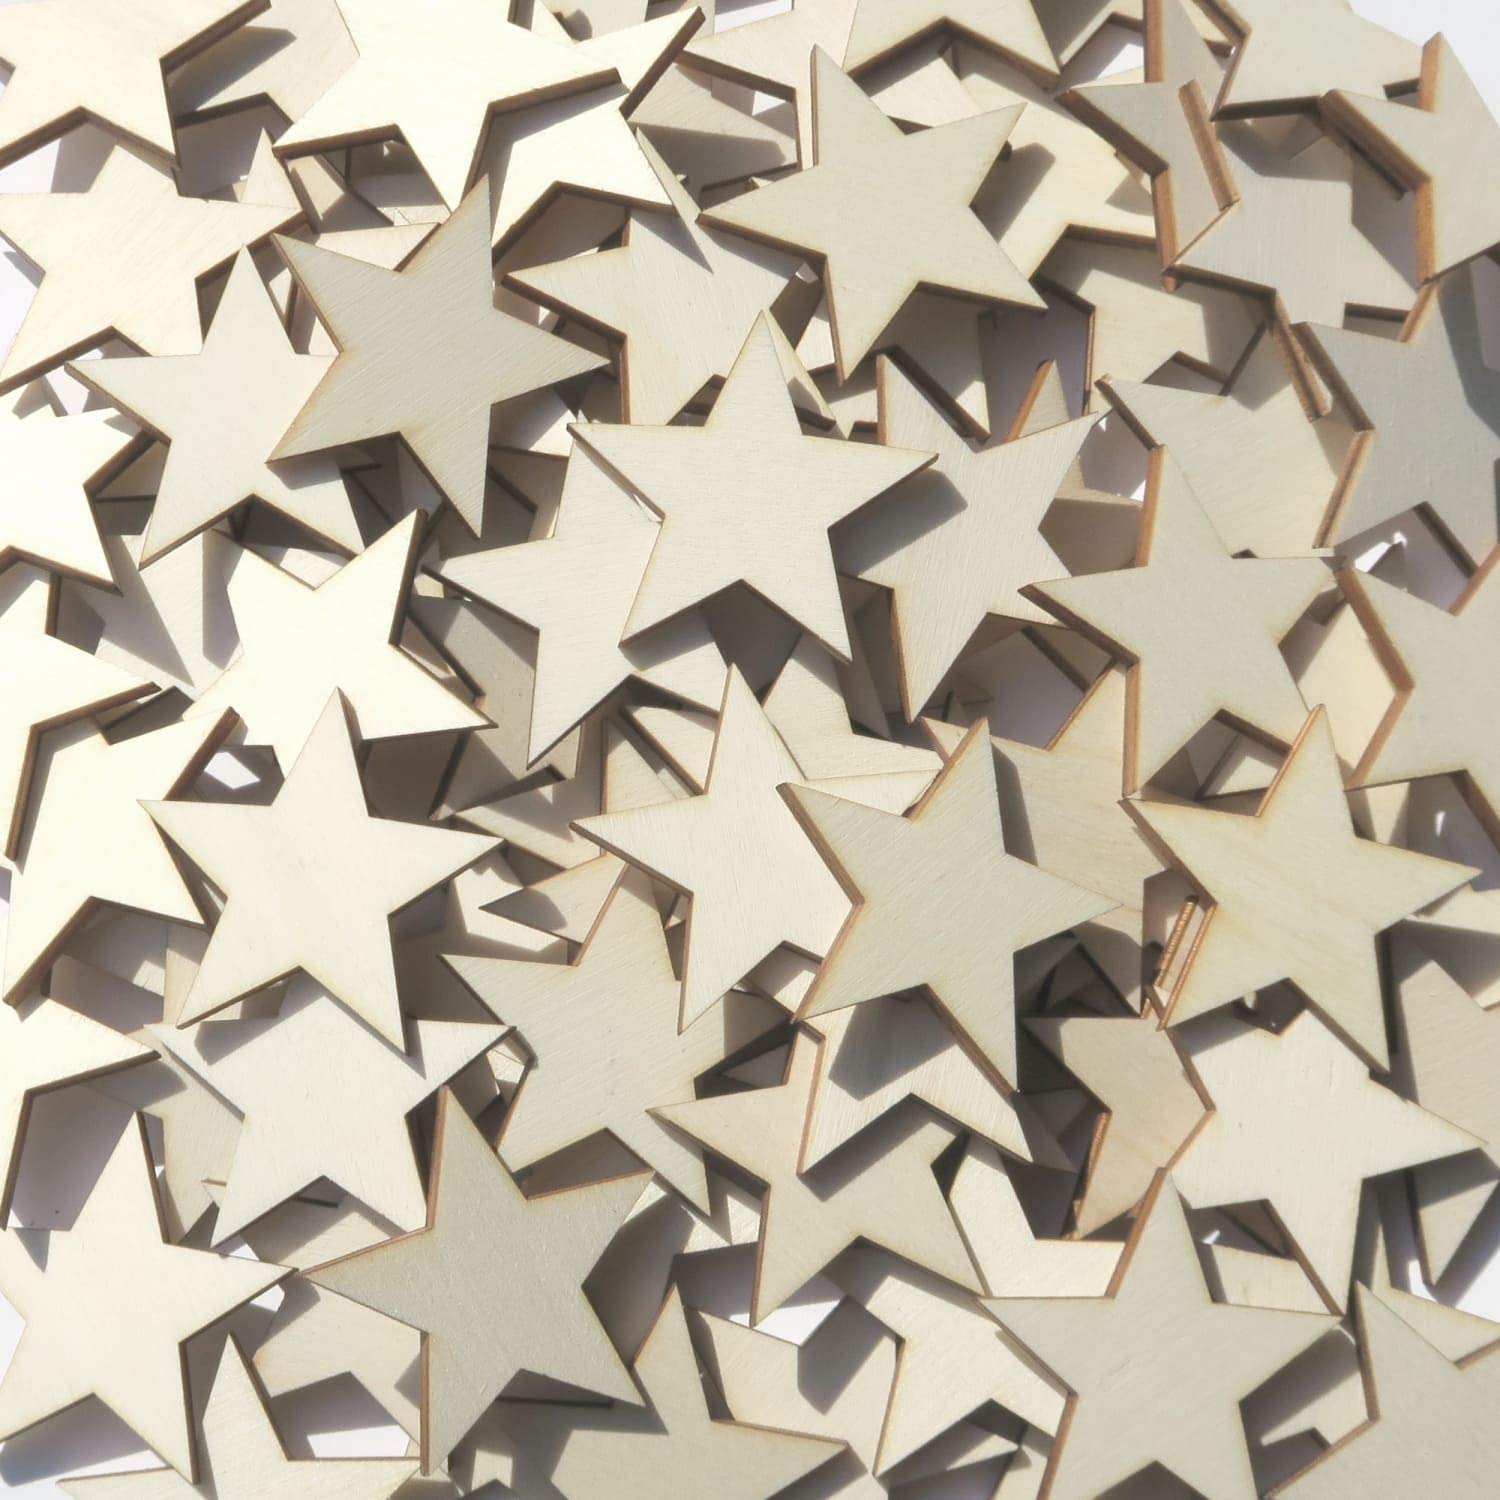 Holz Sterne - 1-10cm Streudeko Basteln Deko Tischdeko, Größe:Sterne 5cm, Pack mit:100 Stück